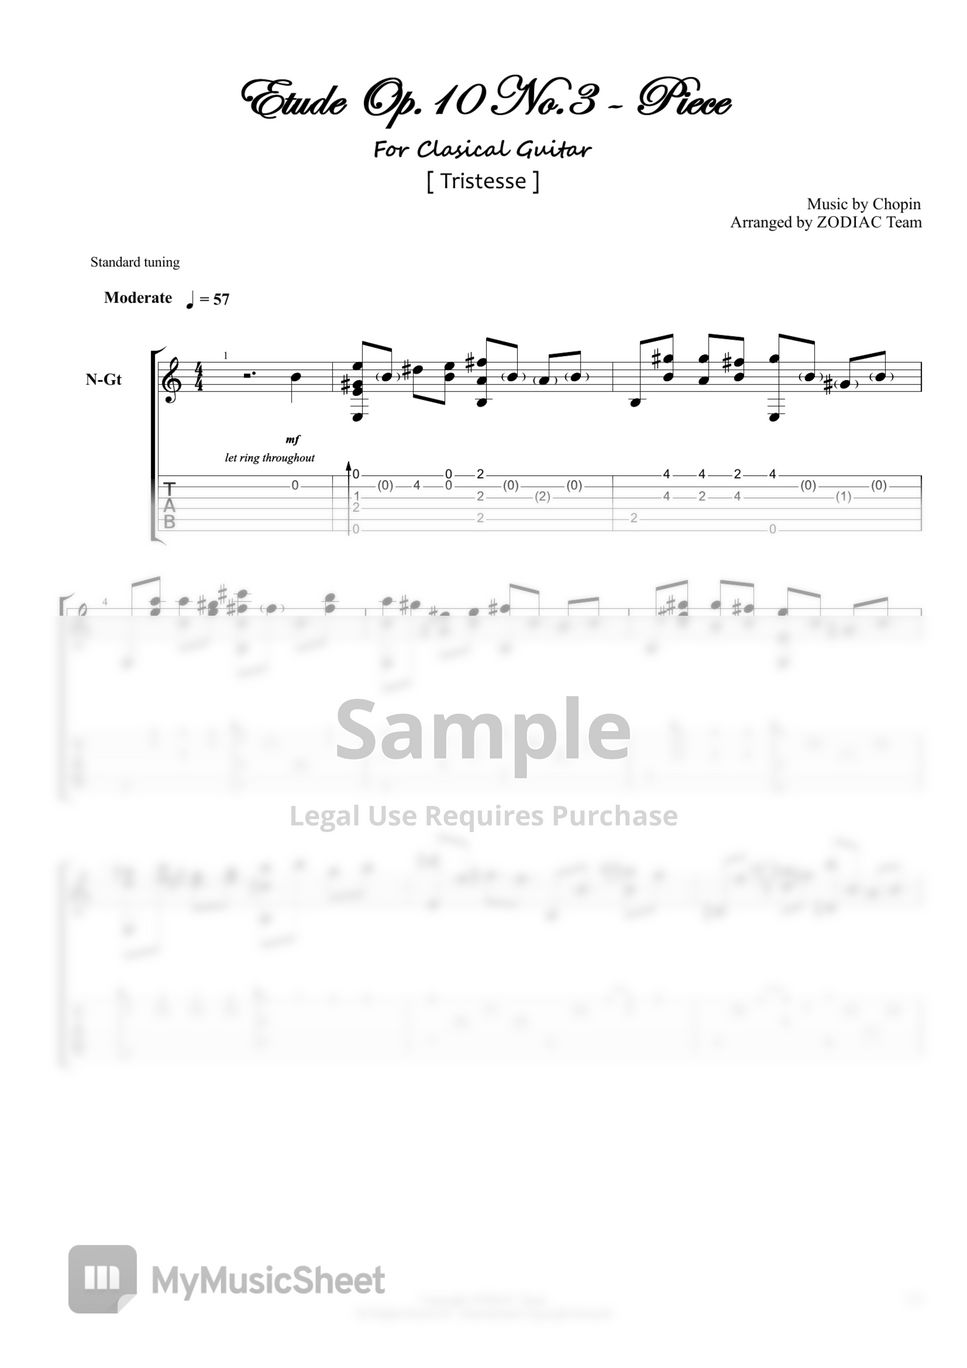 Chopin - Etude Op.10 No.3 by ZODIAC Team